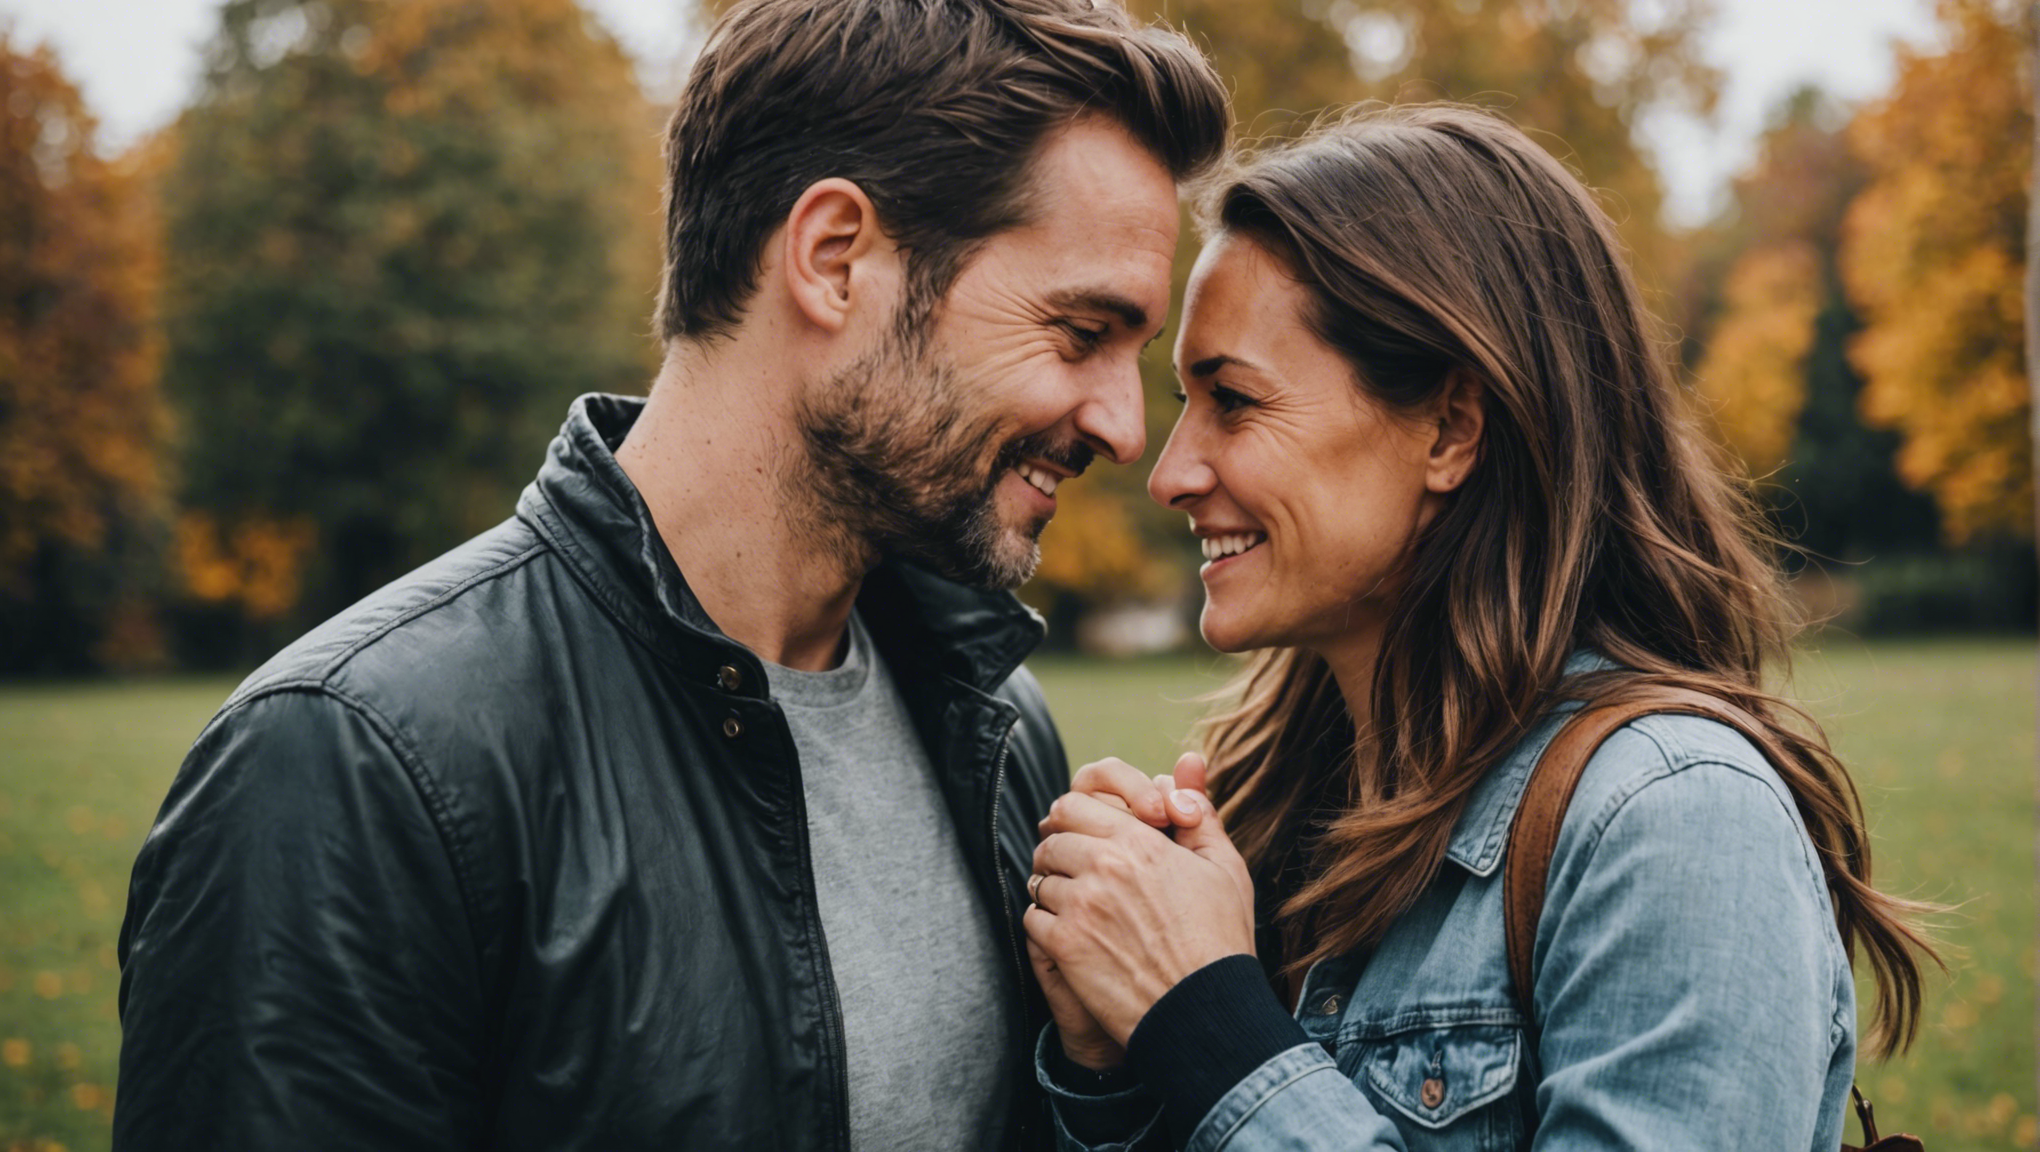 découvrez les clés pour être heureuse en couple et cultiver une relation épanouissante. conseils et astuces pour entretenir l'harmonie dans votre vie sentimentale.